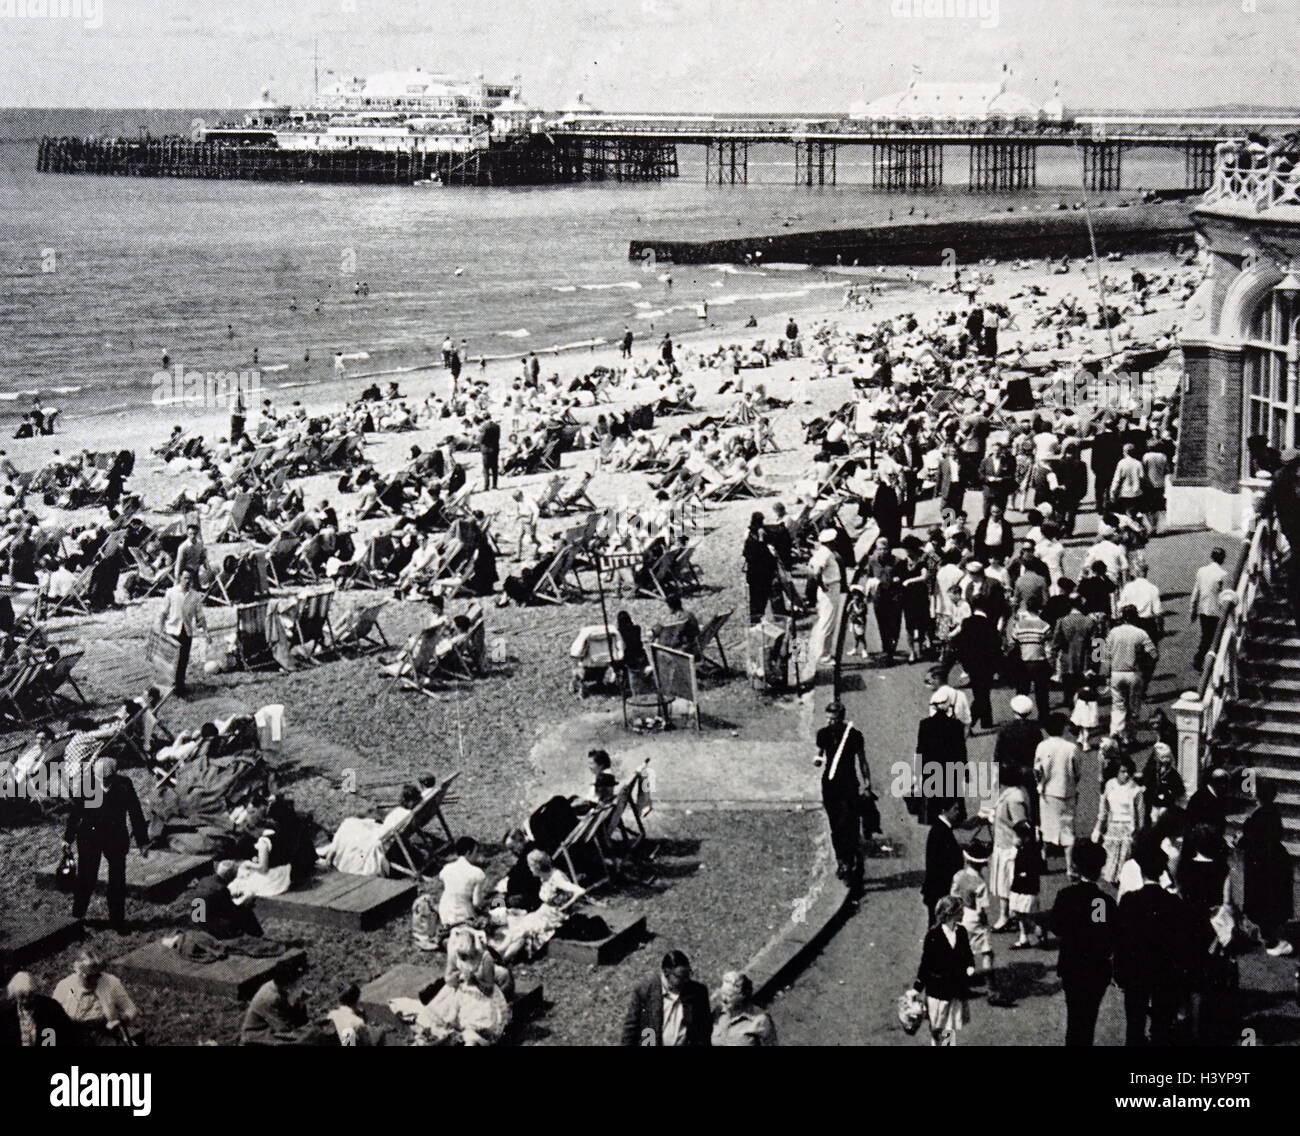 Photo de touristes à la West Pier de Brighton à la veille de la Banque août Maison de vacances. En date du 20e siècle Banque D'Images